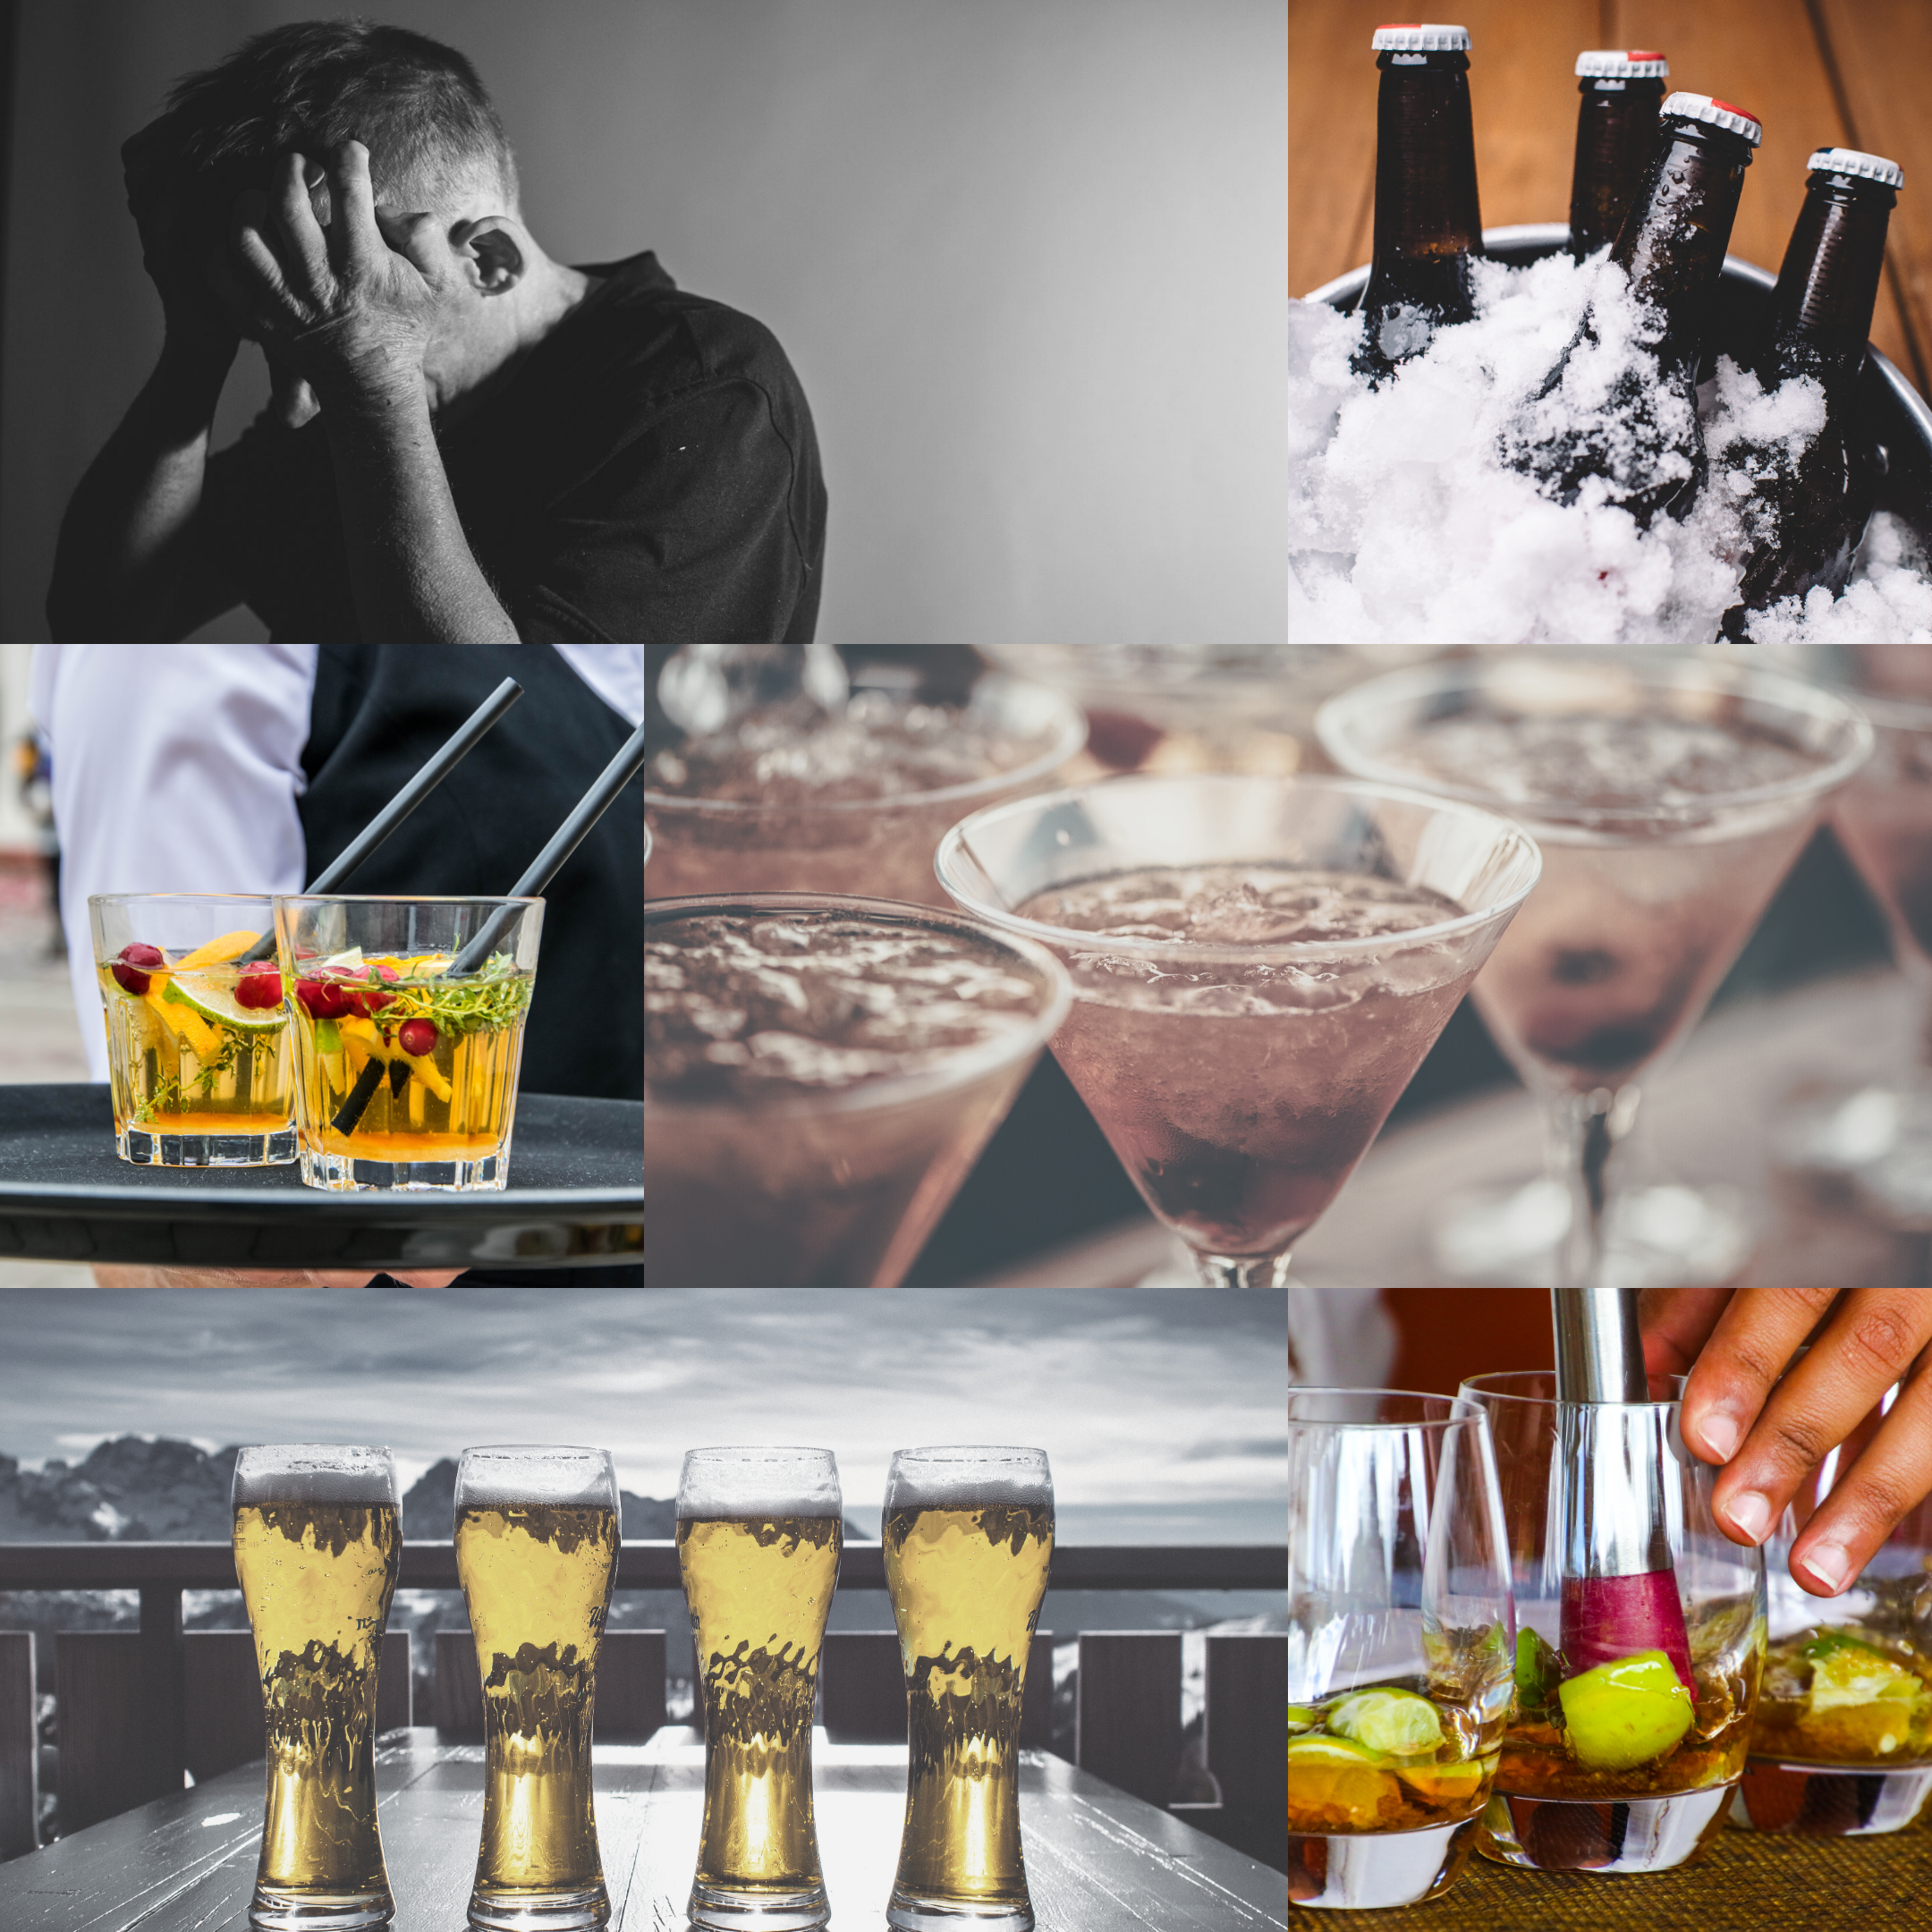 Isolamento social: como anda seu consumo de bebidas alcoólicas?